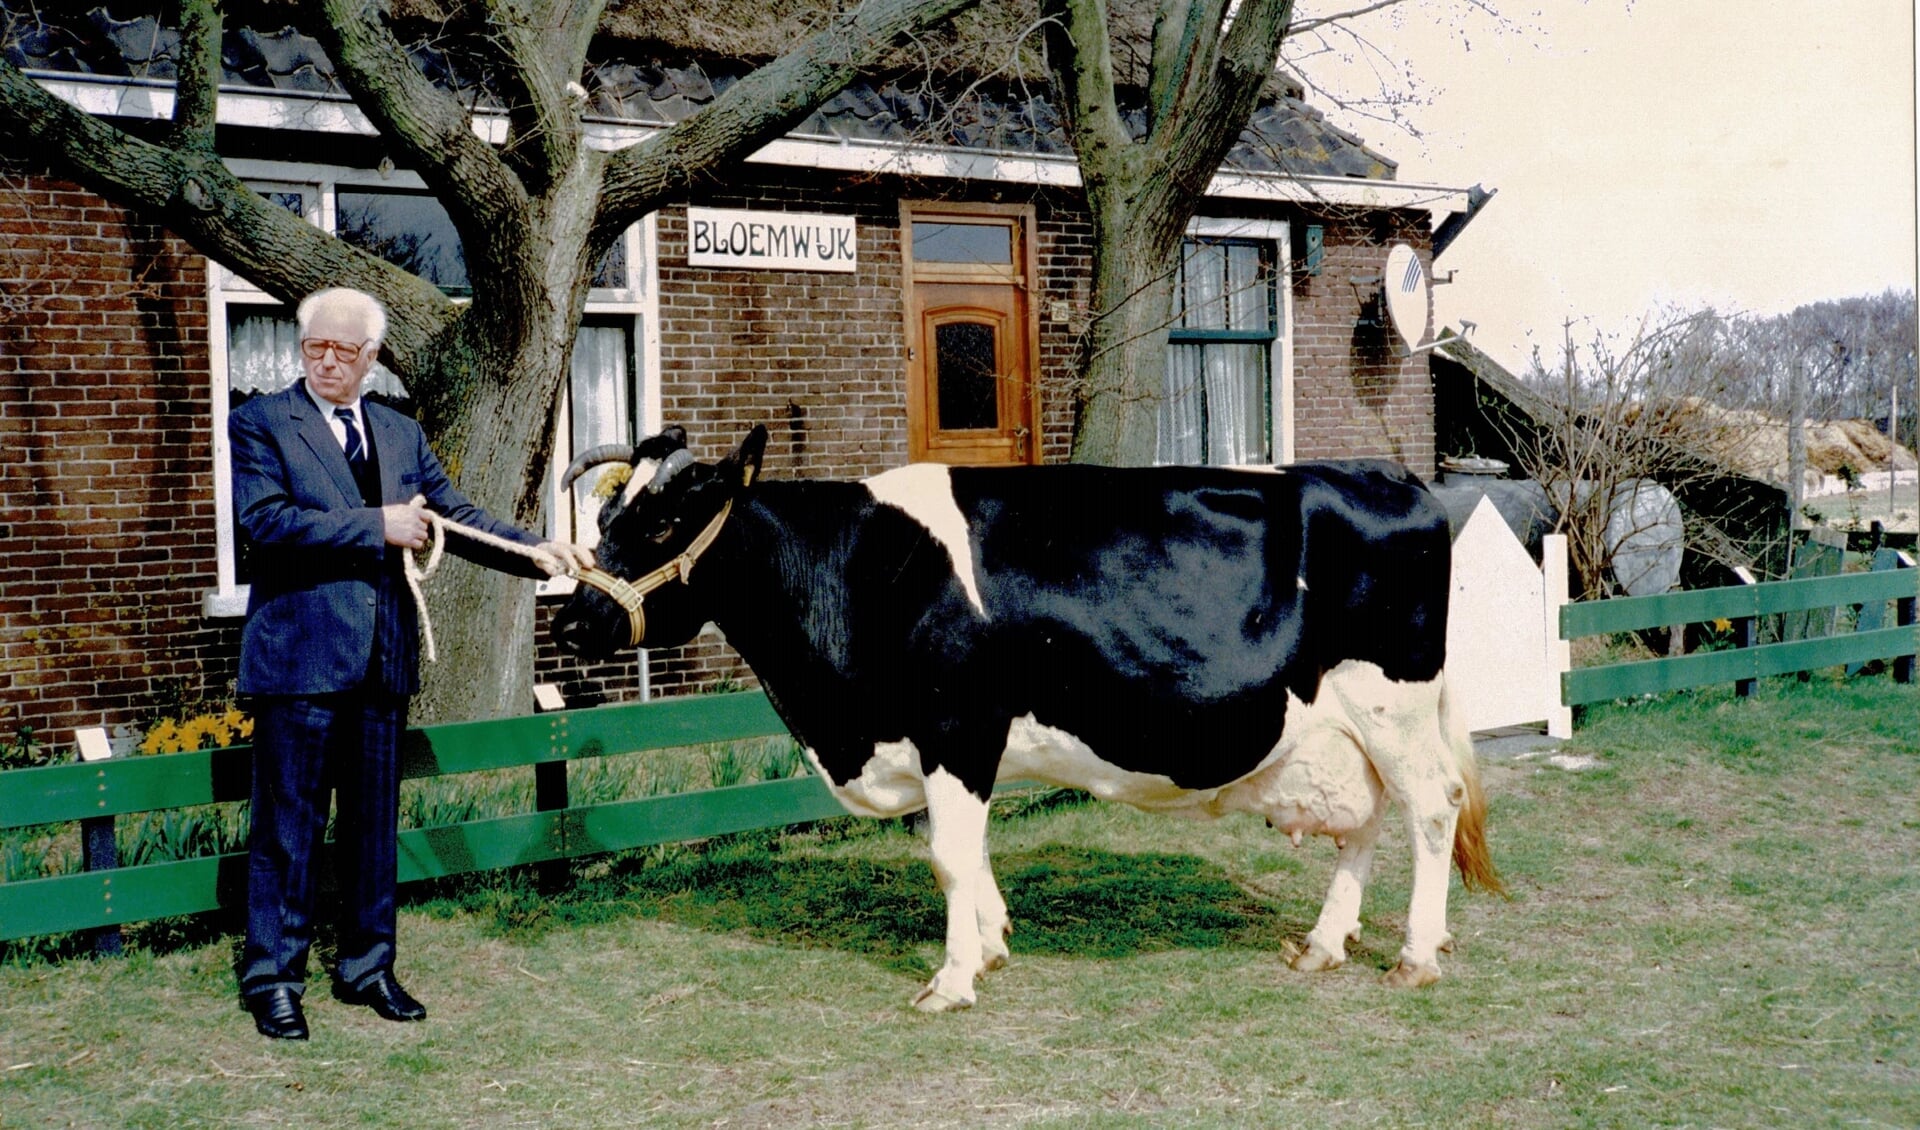 De nalatenschap van Han Witte van Bloemwijk, hier met één van zijn succesvolle koeien, is inzet van een familietwist over het eigendom van de hoeve en gezinscamping.